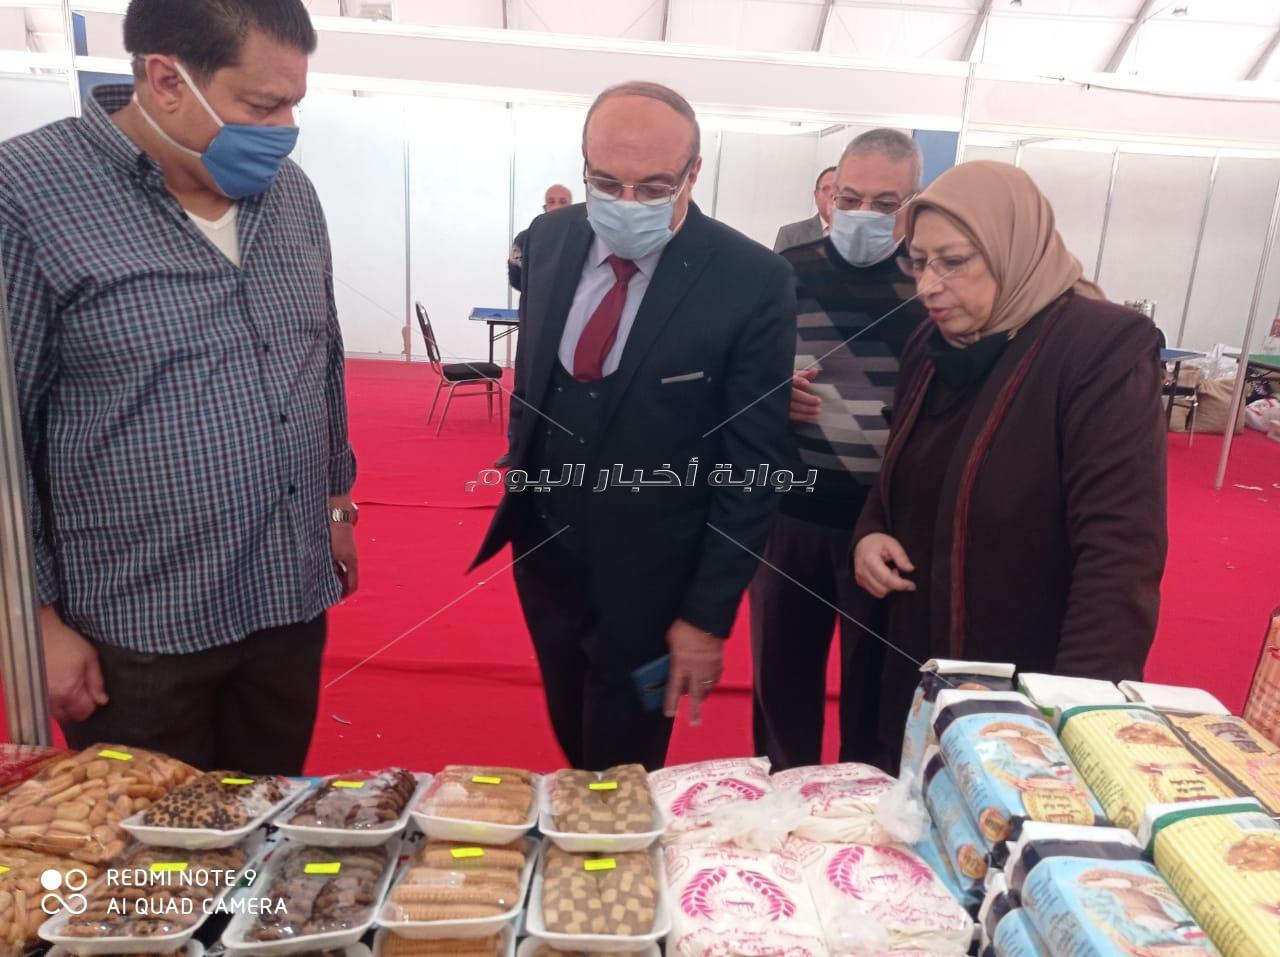 الاسكندرية تستعد لانطلاق معرض " اهلا رمضان " بارض كوته و المجمعات